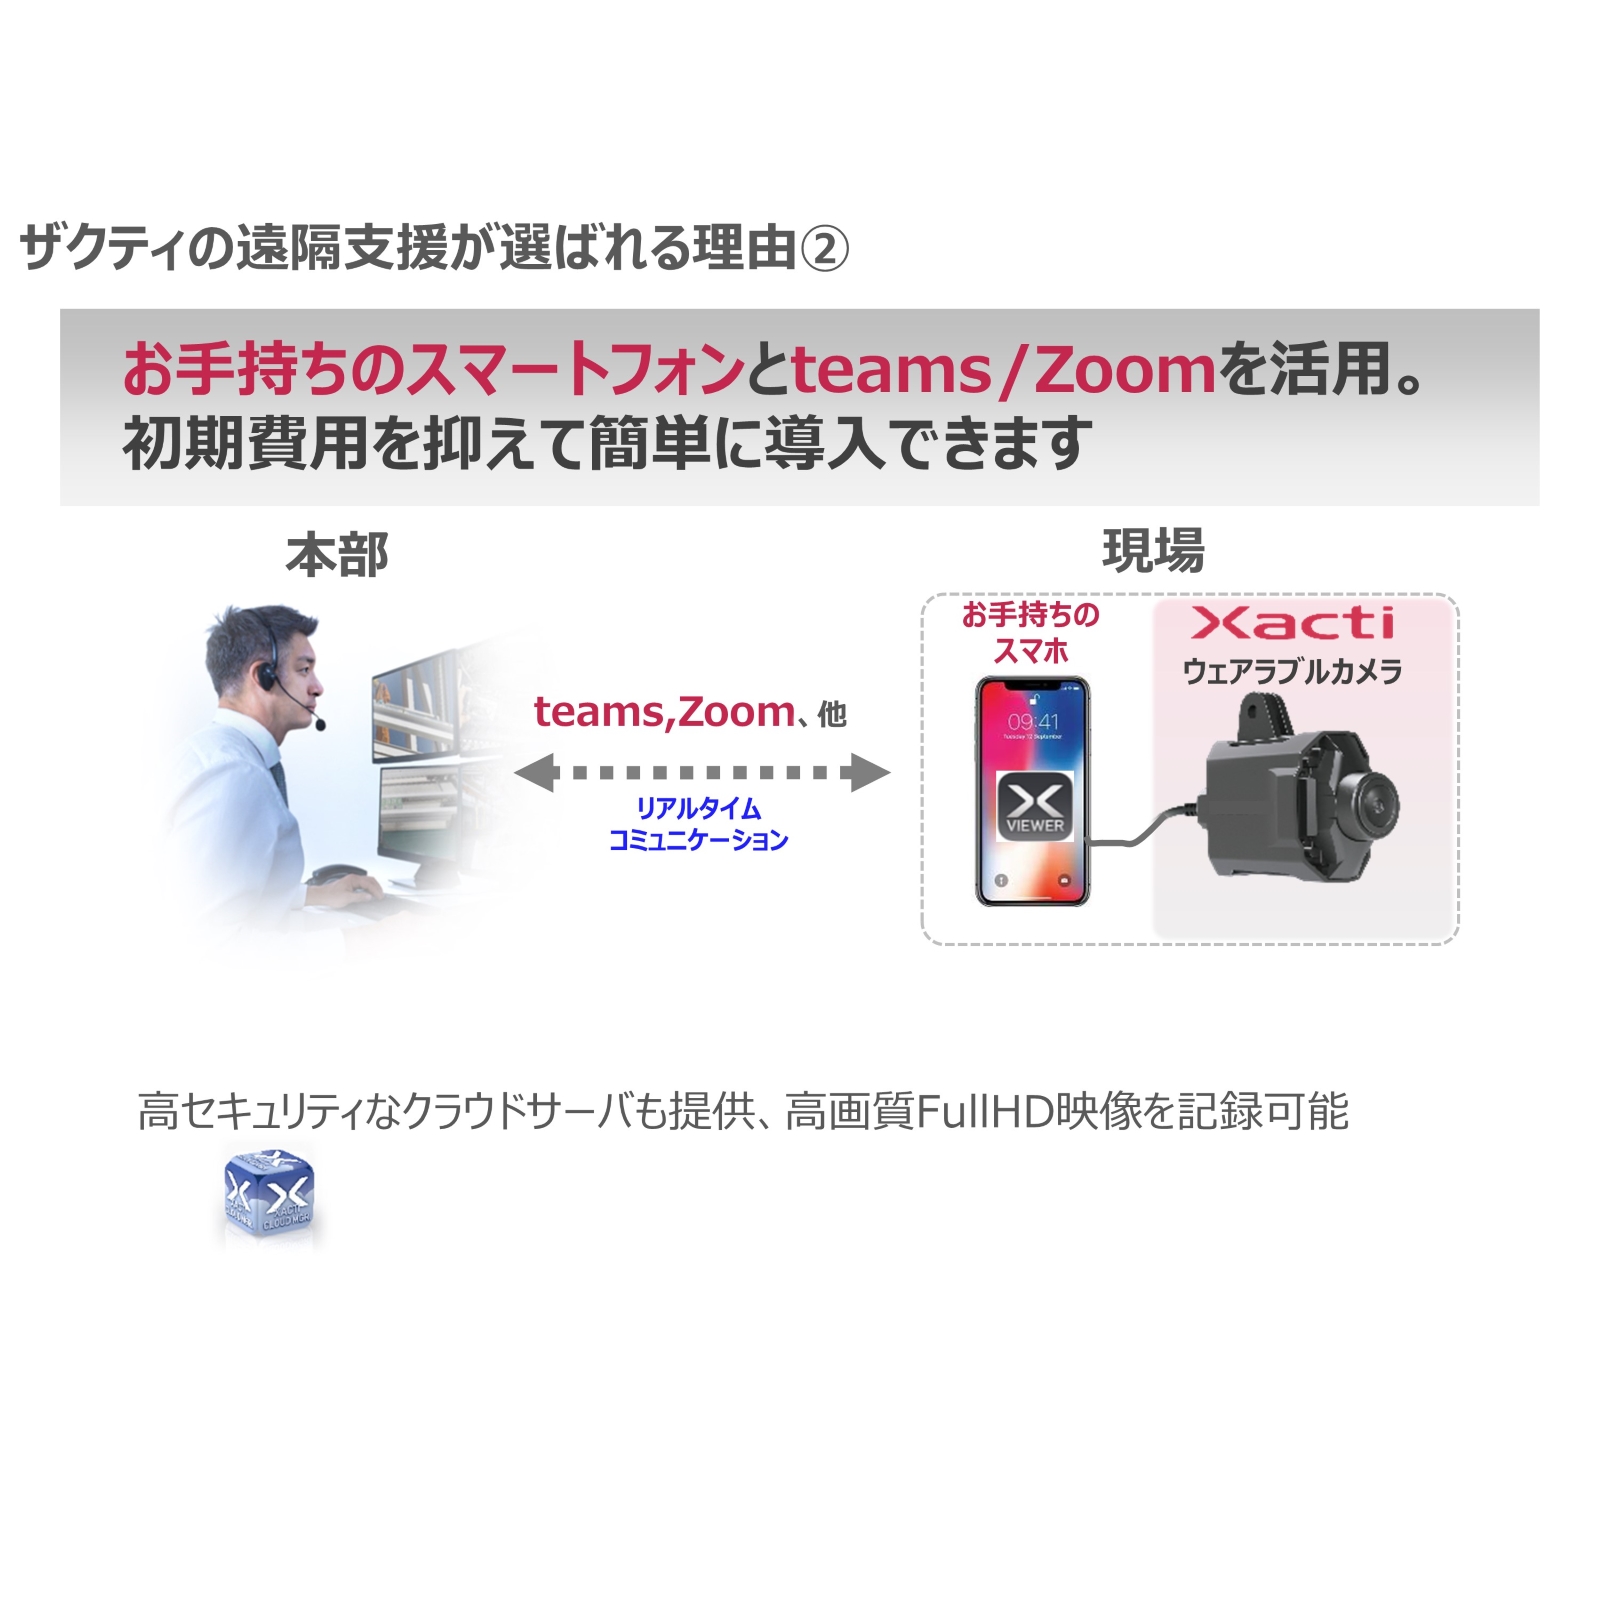 2個以上購入で送料無料 ザクティ ウェアラブルカメラ用クリップマウントアクセサリ AX-CM300 1個 通販 